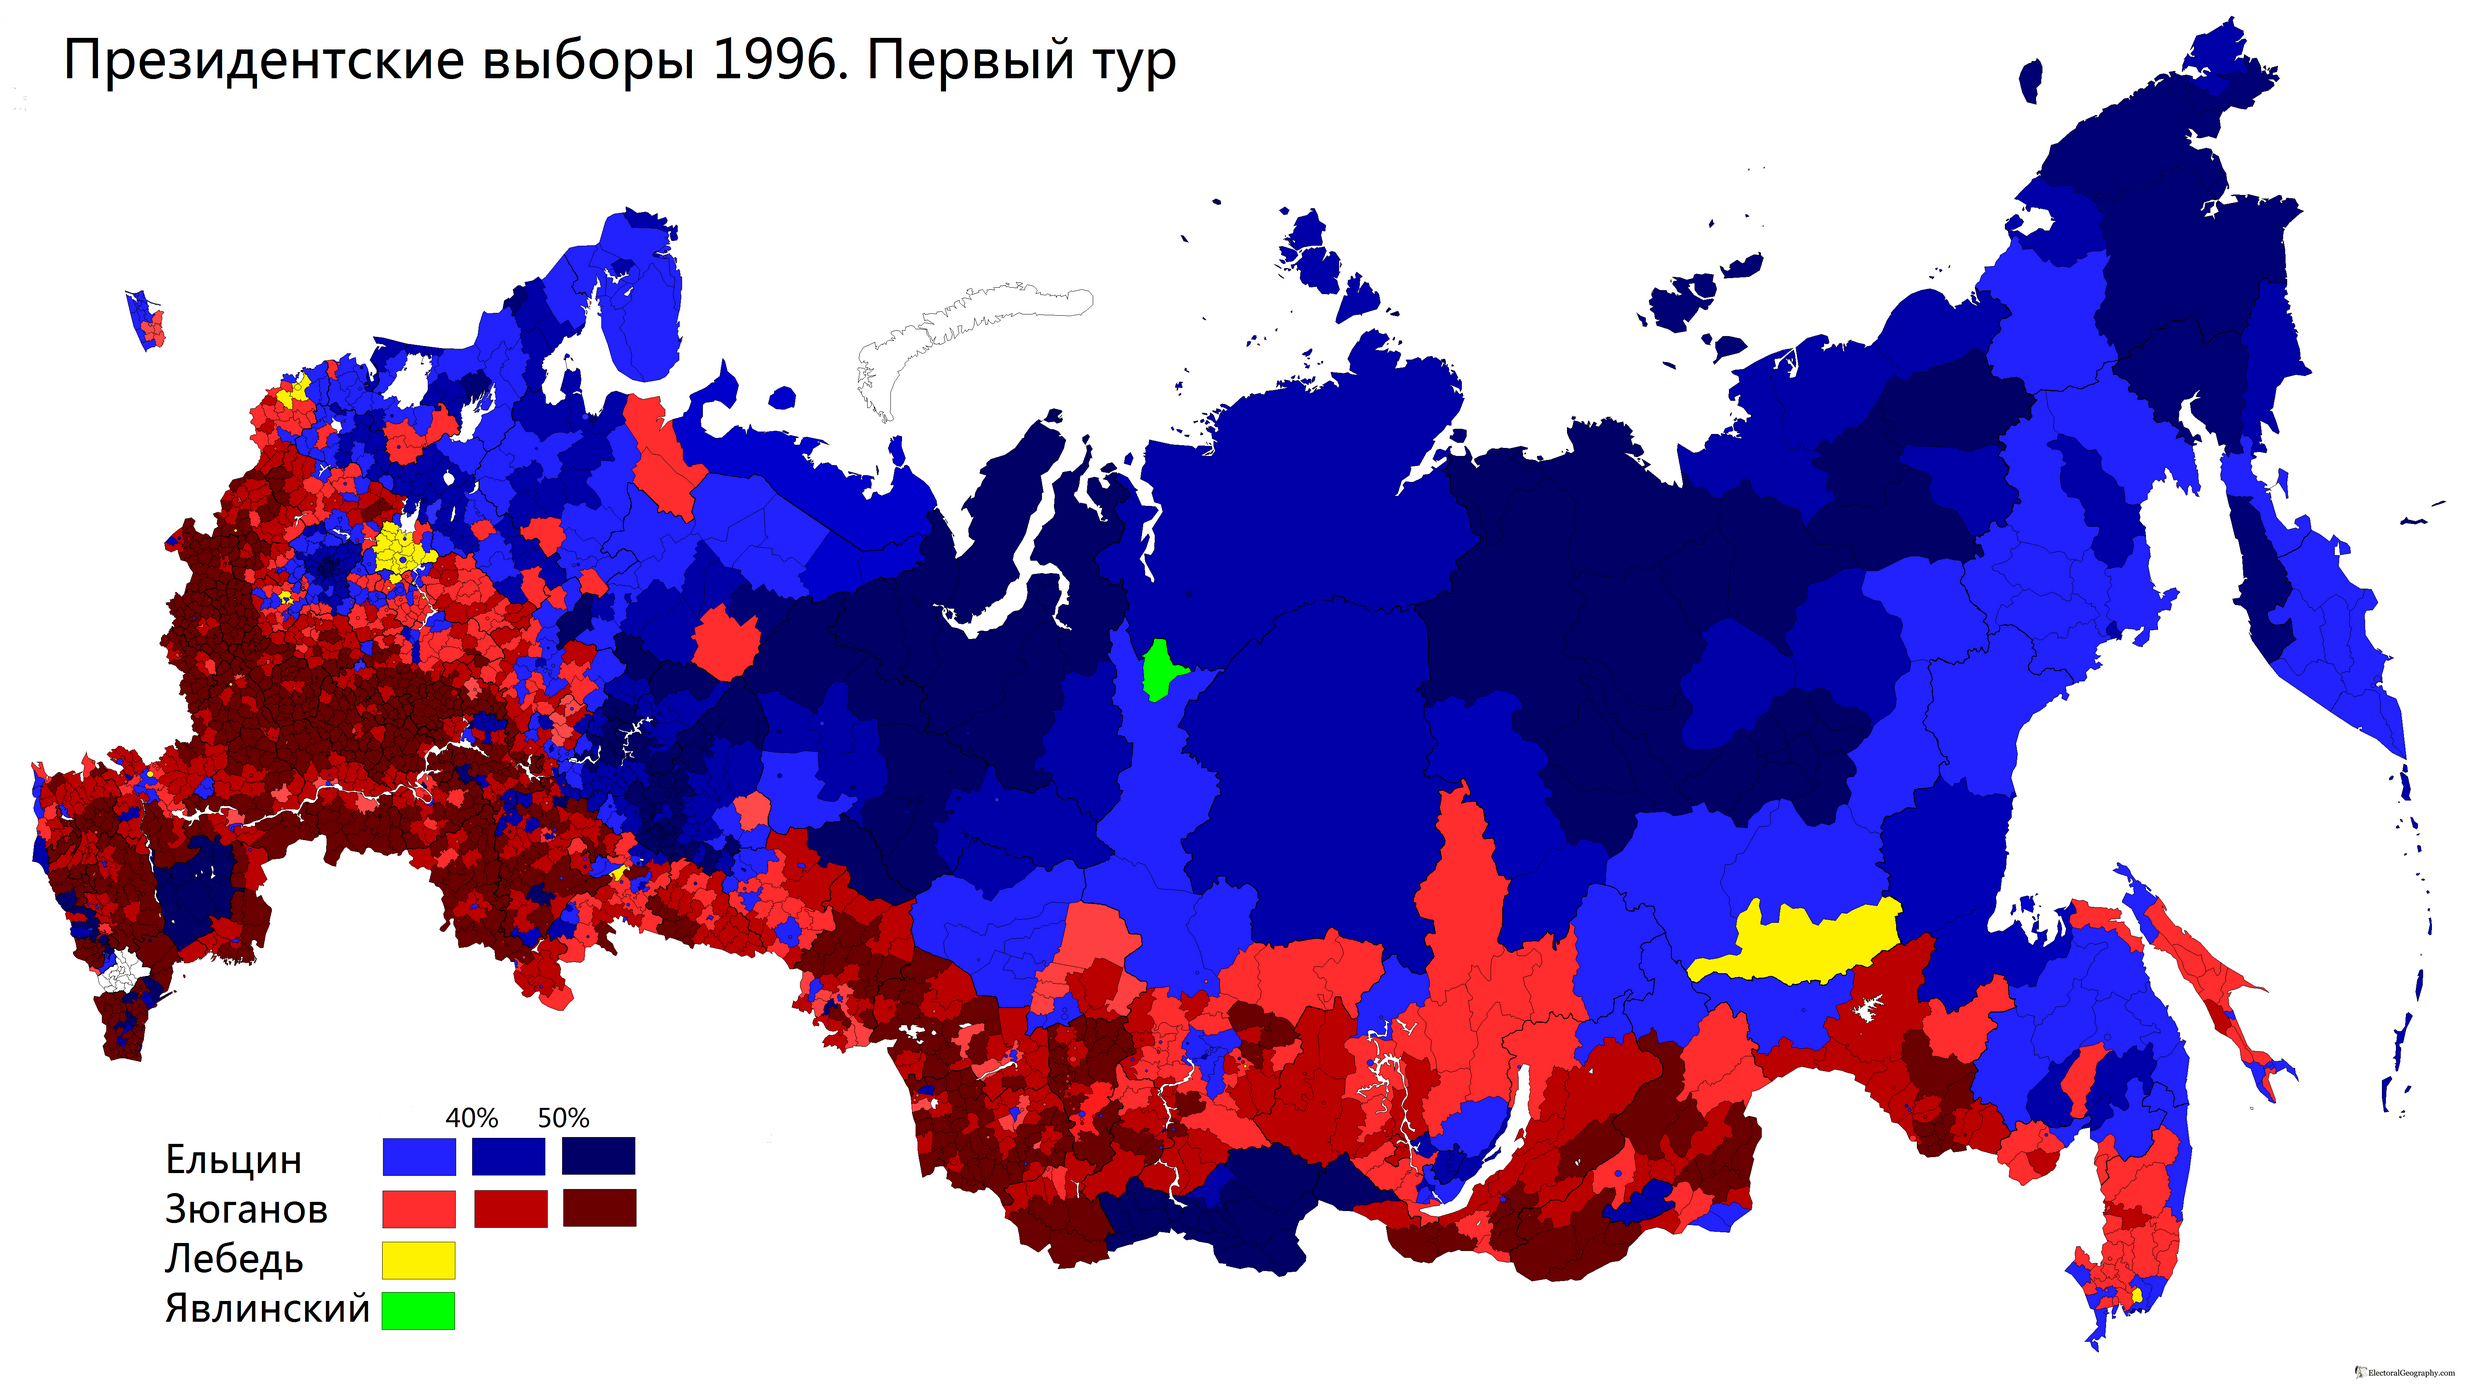 Вторые туры президентских выборов. Карта выборов президента России 1996. Президентские выборы в России 1996 карта. Президентские выборы 1996 года в России. Карта выборов 1996 года.